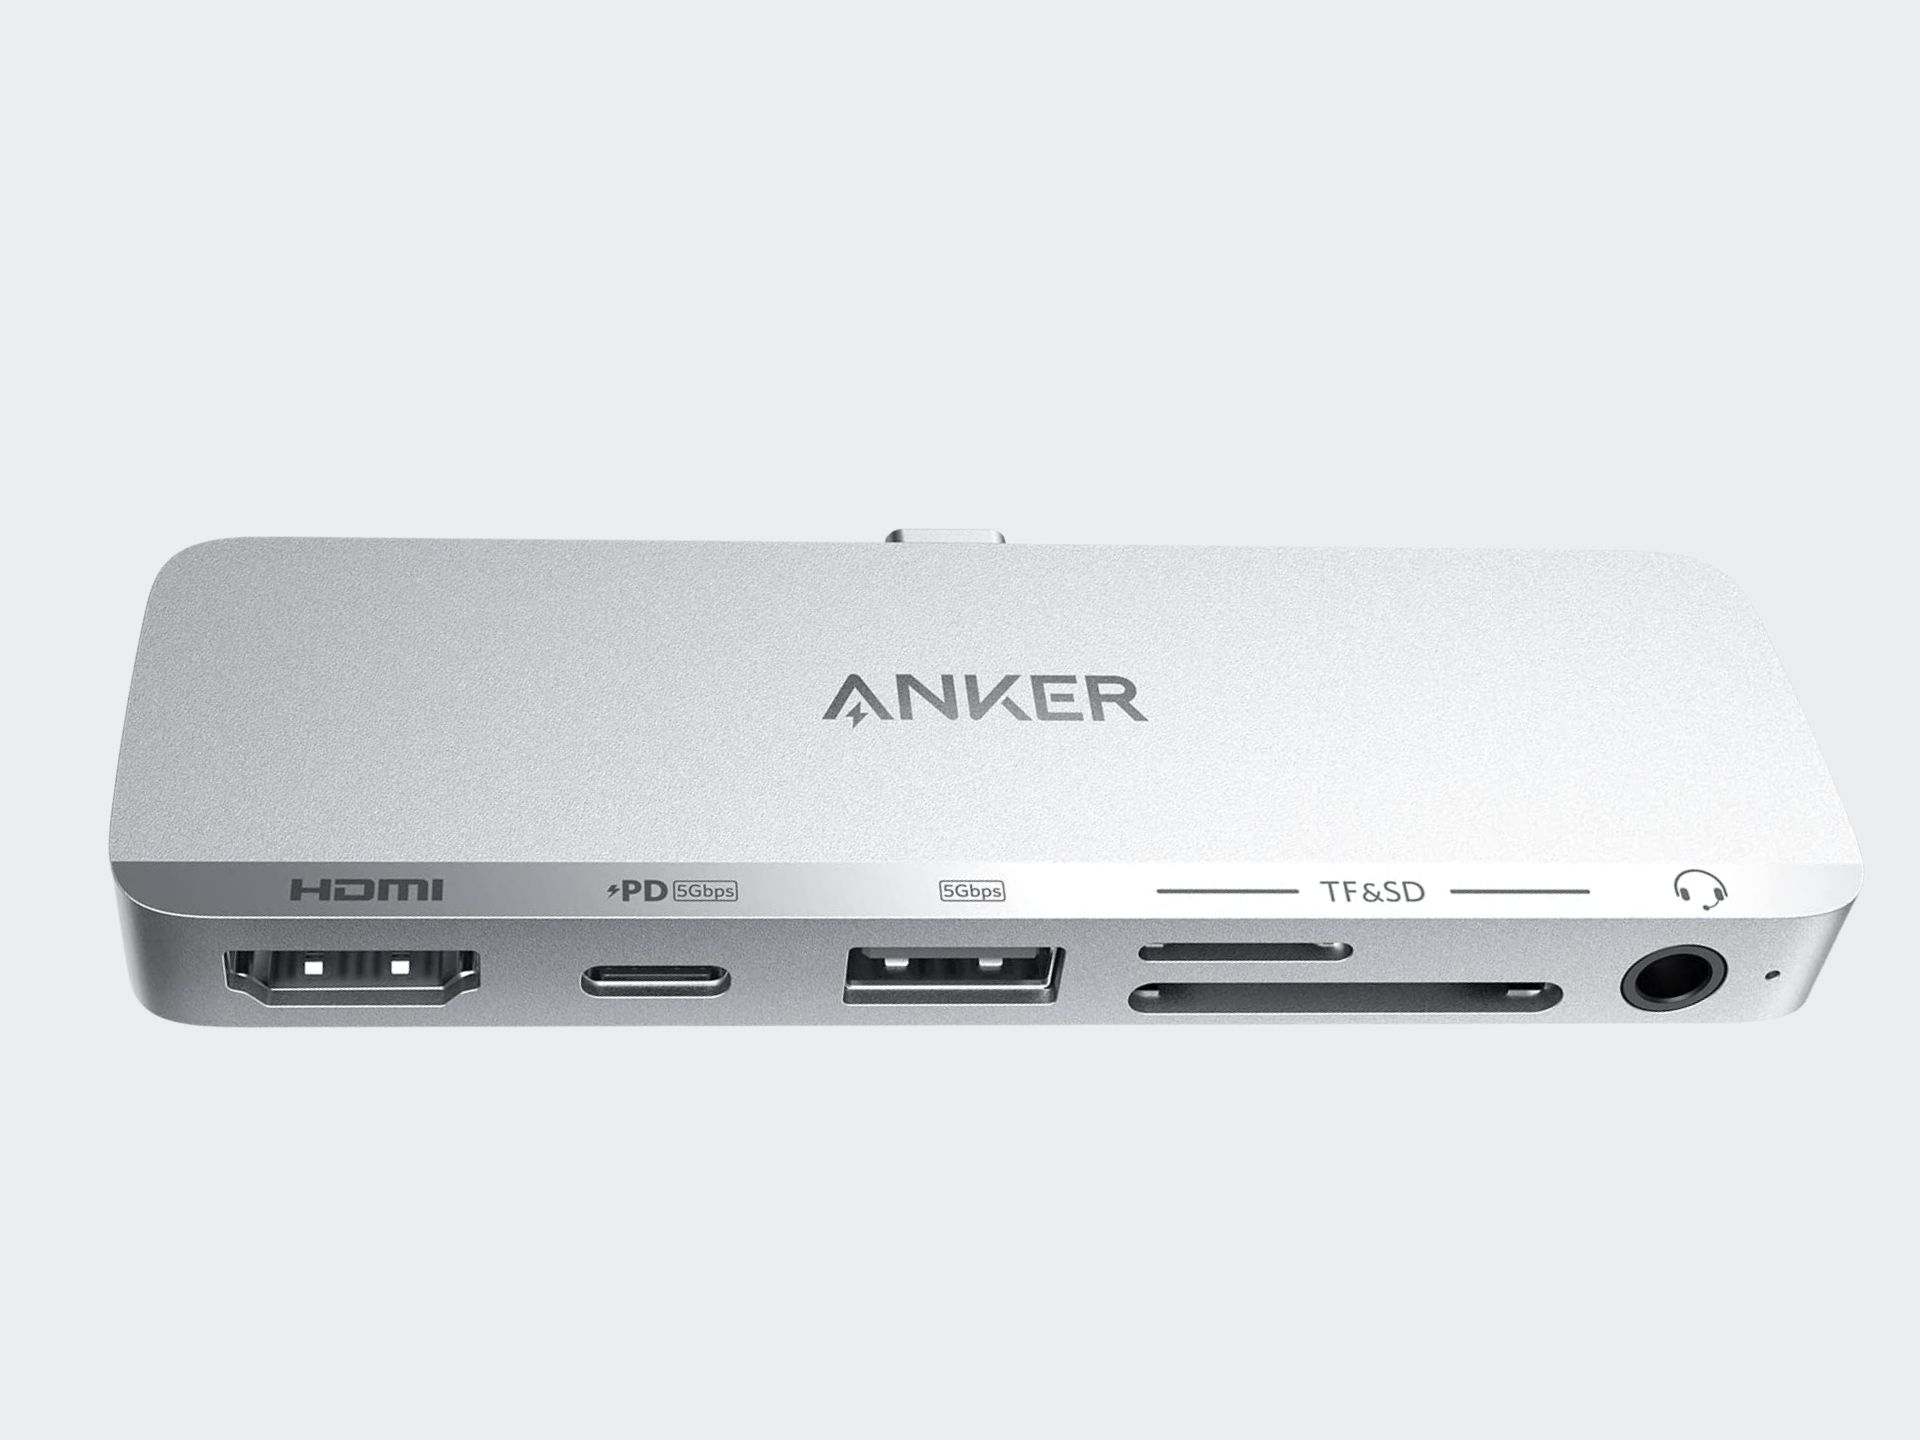 Anker 6-in-1 USB Hub